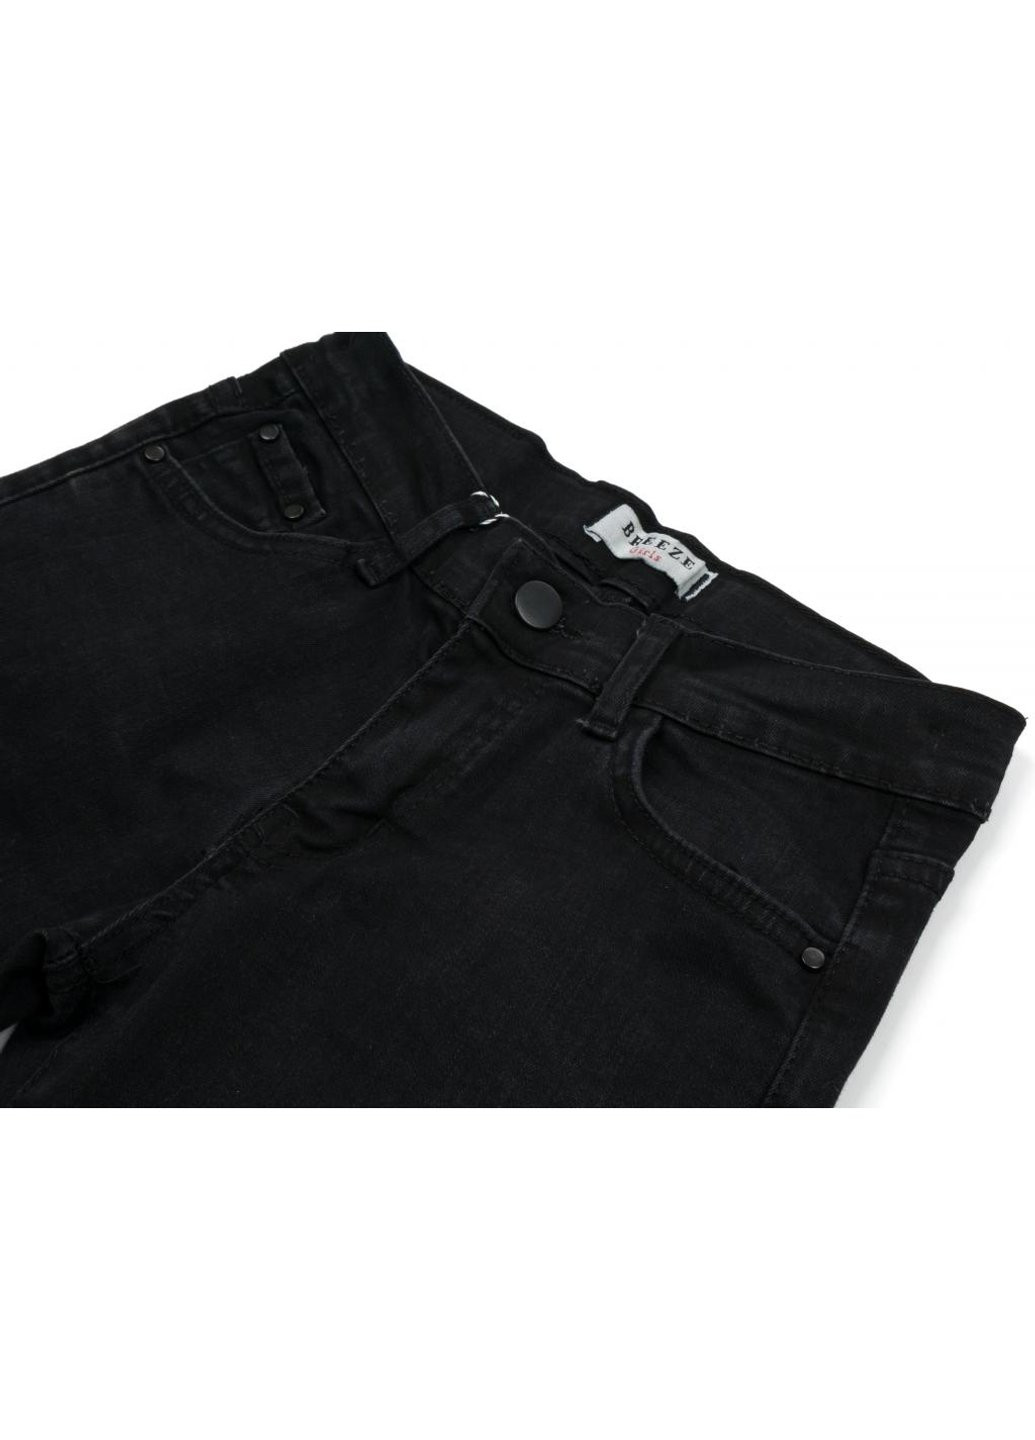 Черные демисезонные джинсы с дырками (20214-164g-black) Breeze